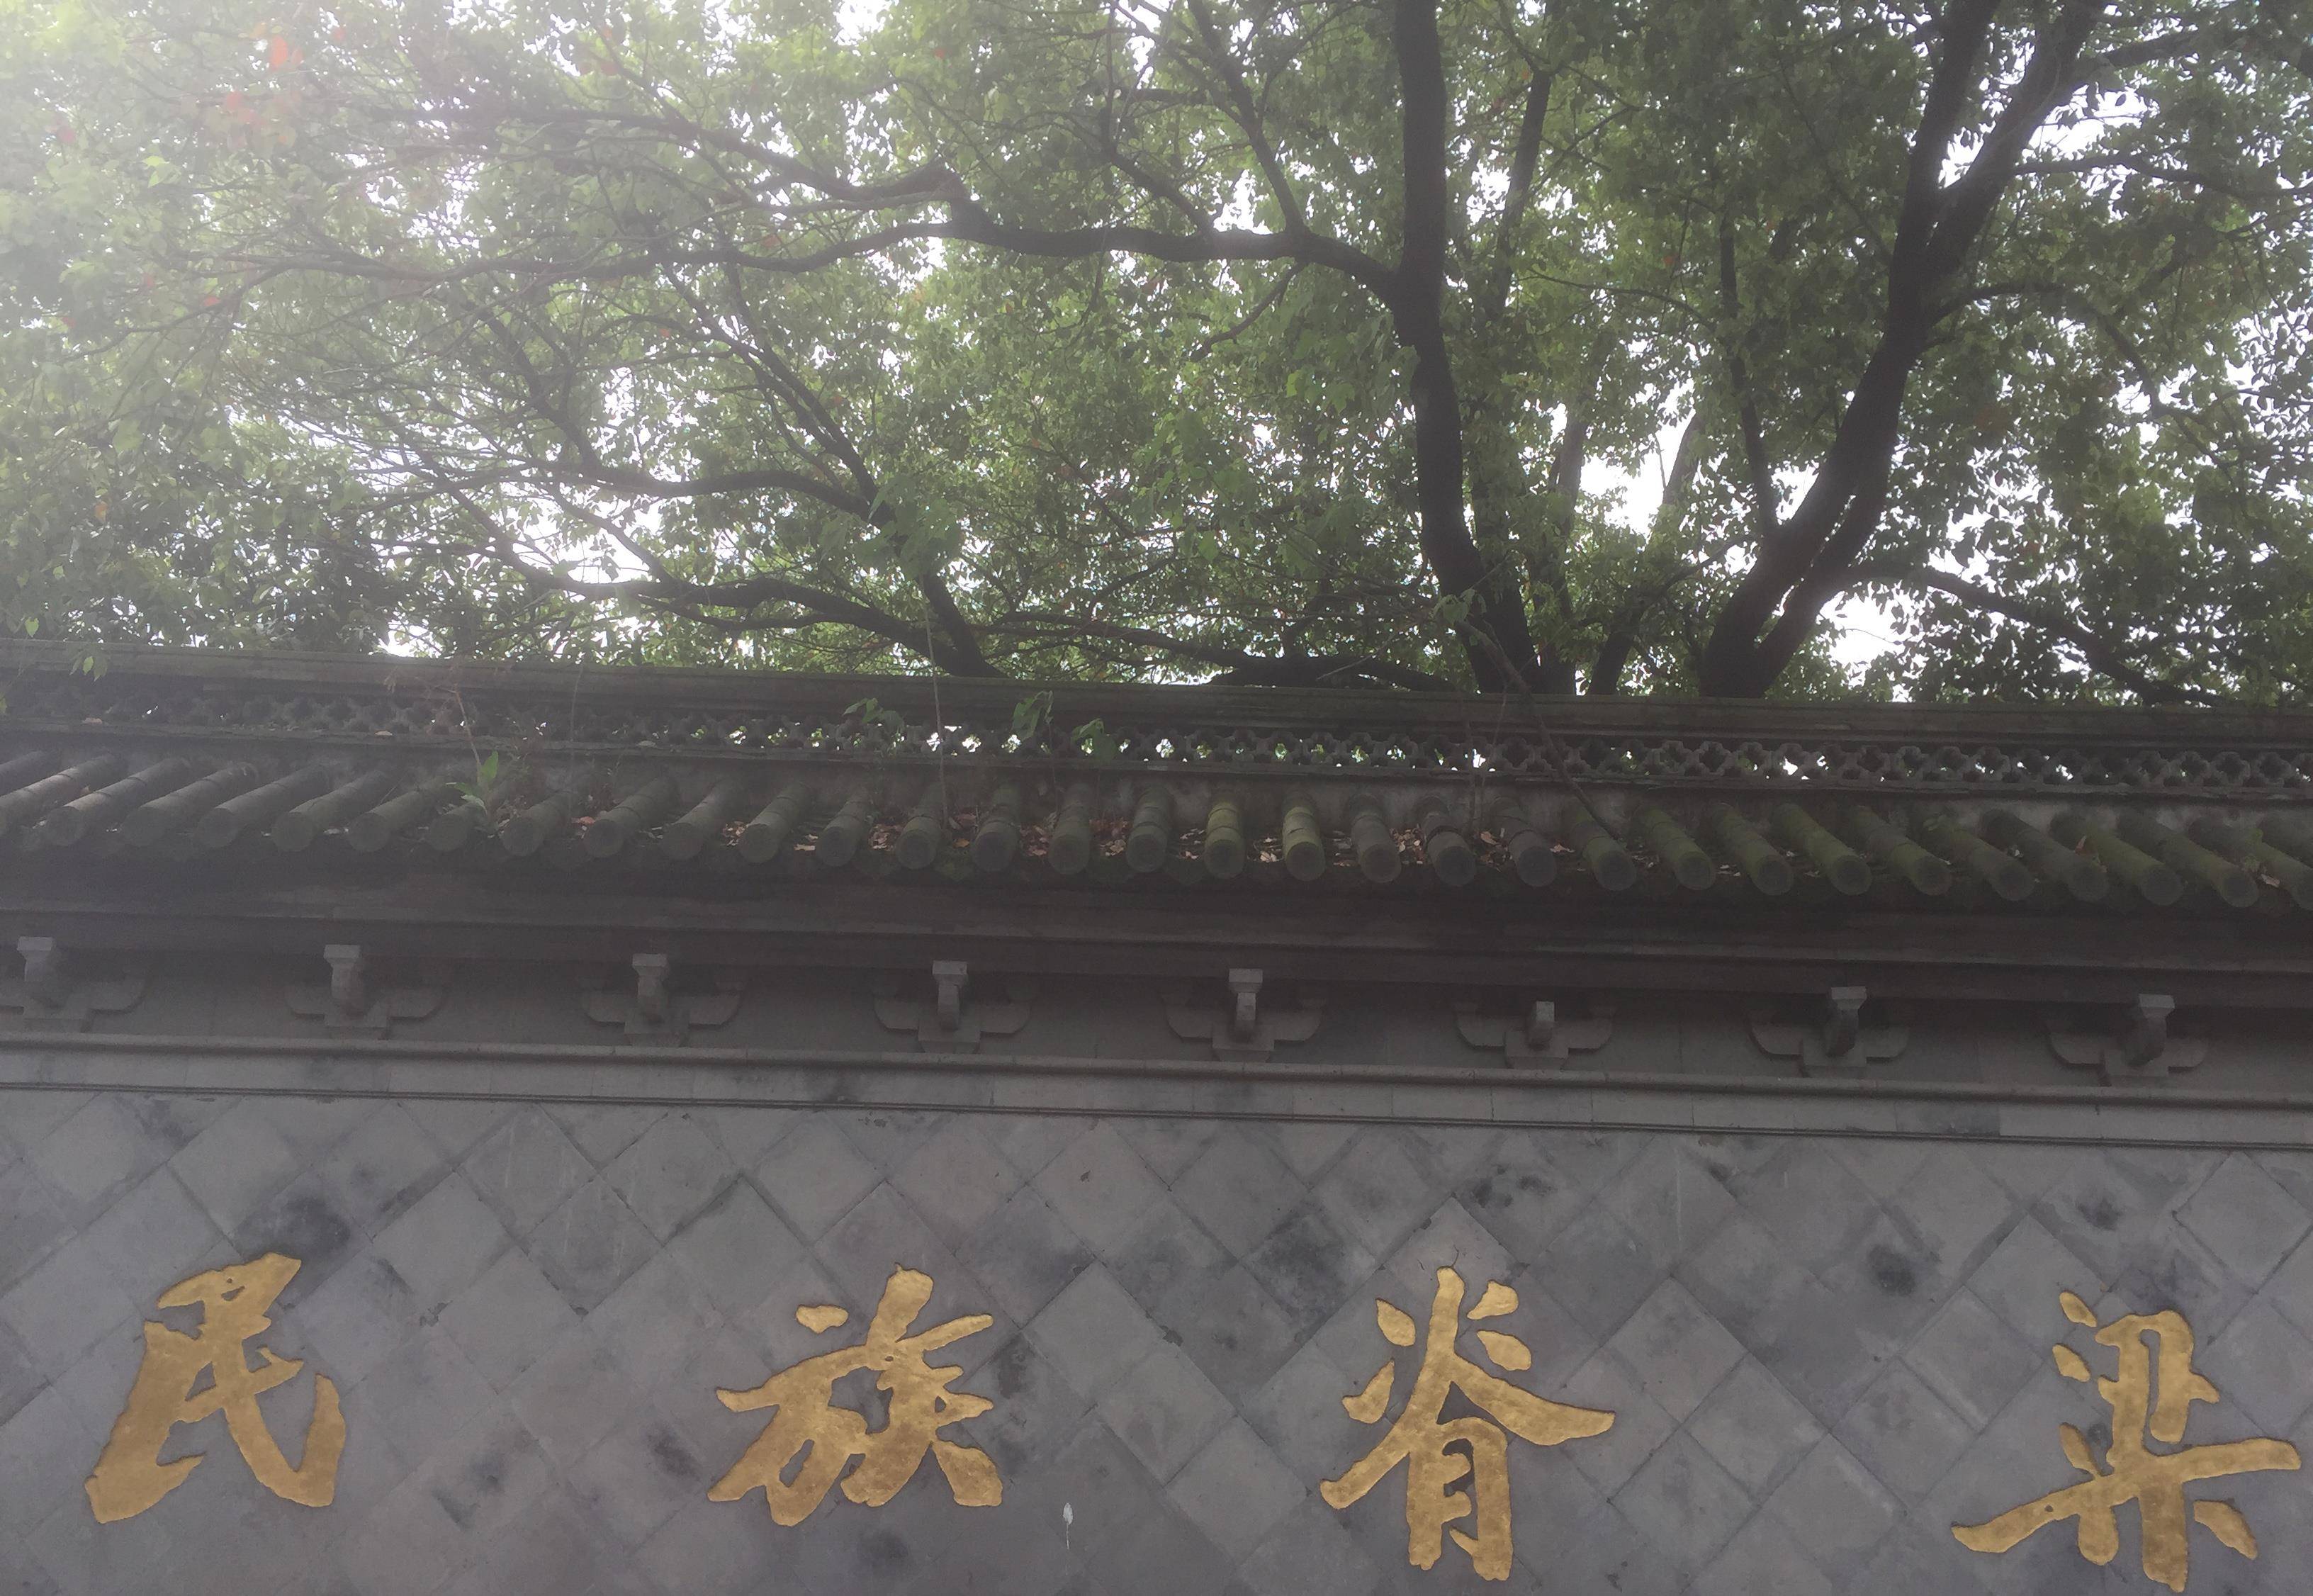 原创鲁迅墓在上海虹口现在叫做鲁迅公园